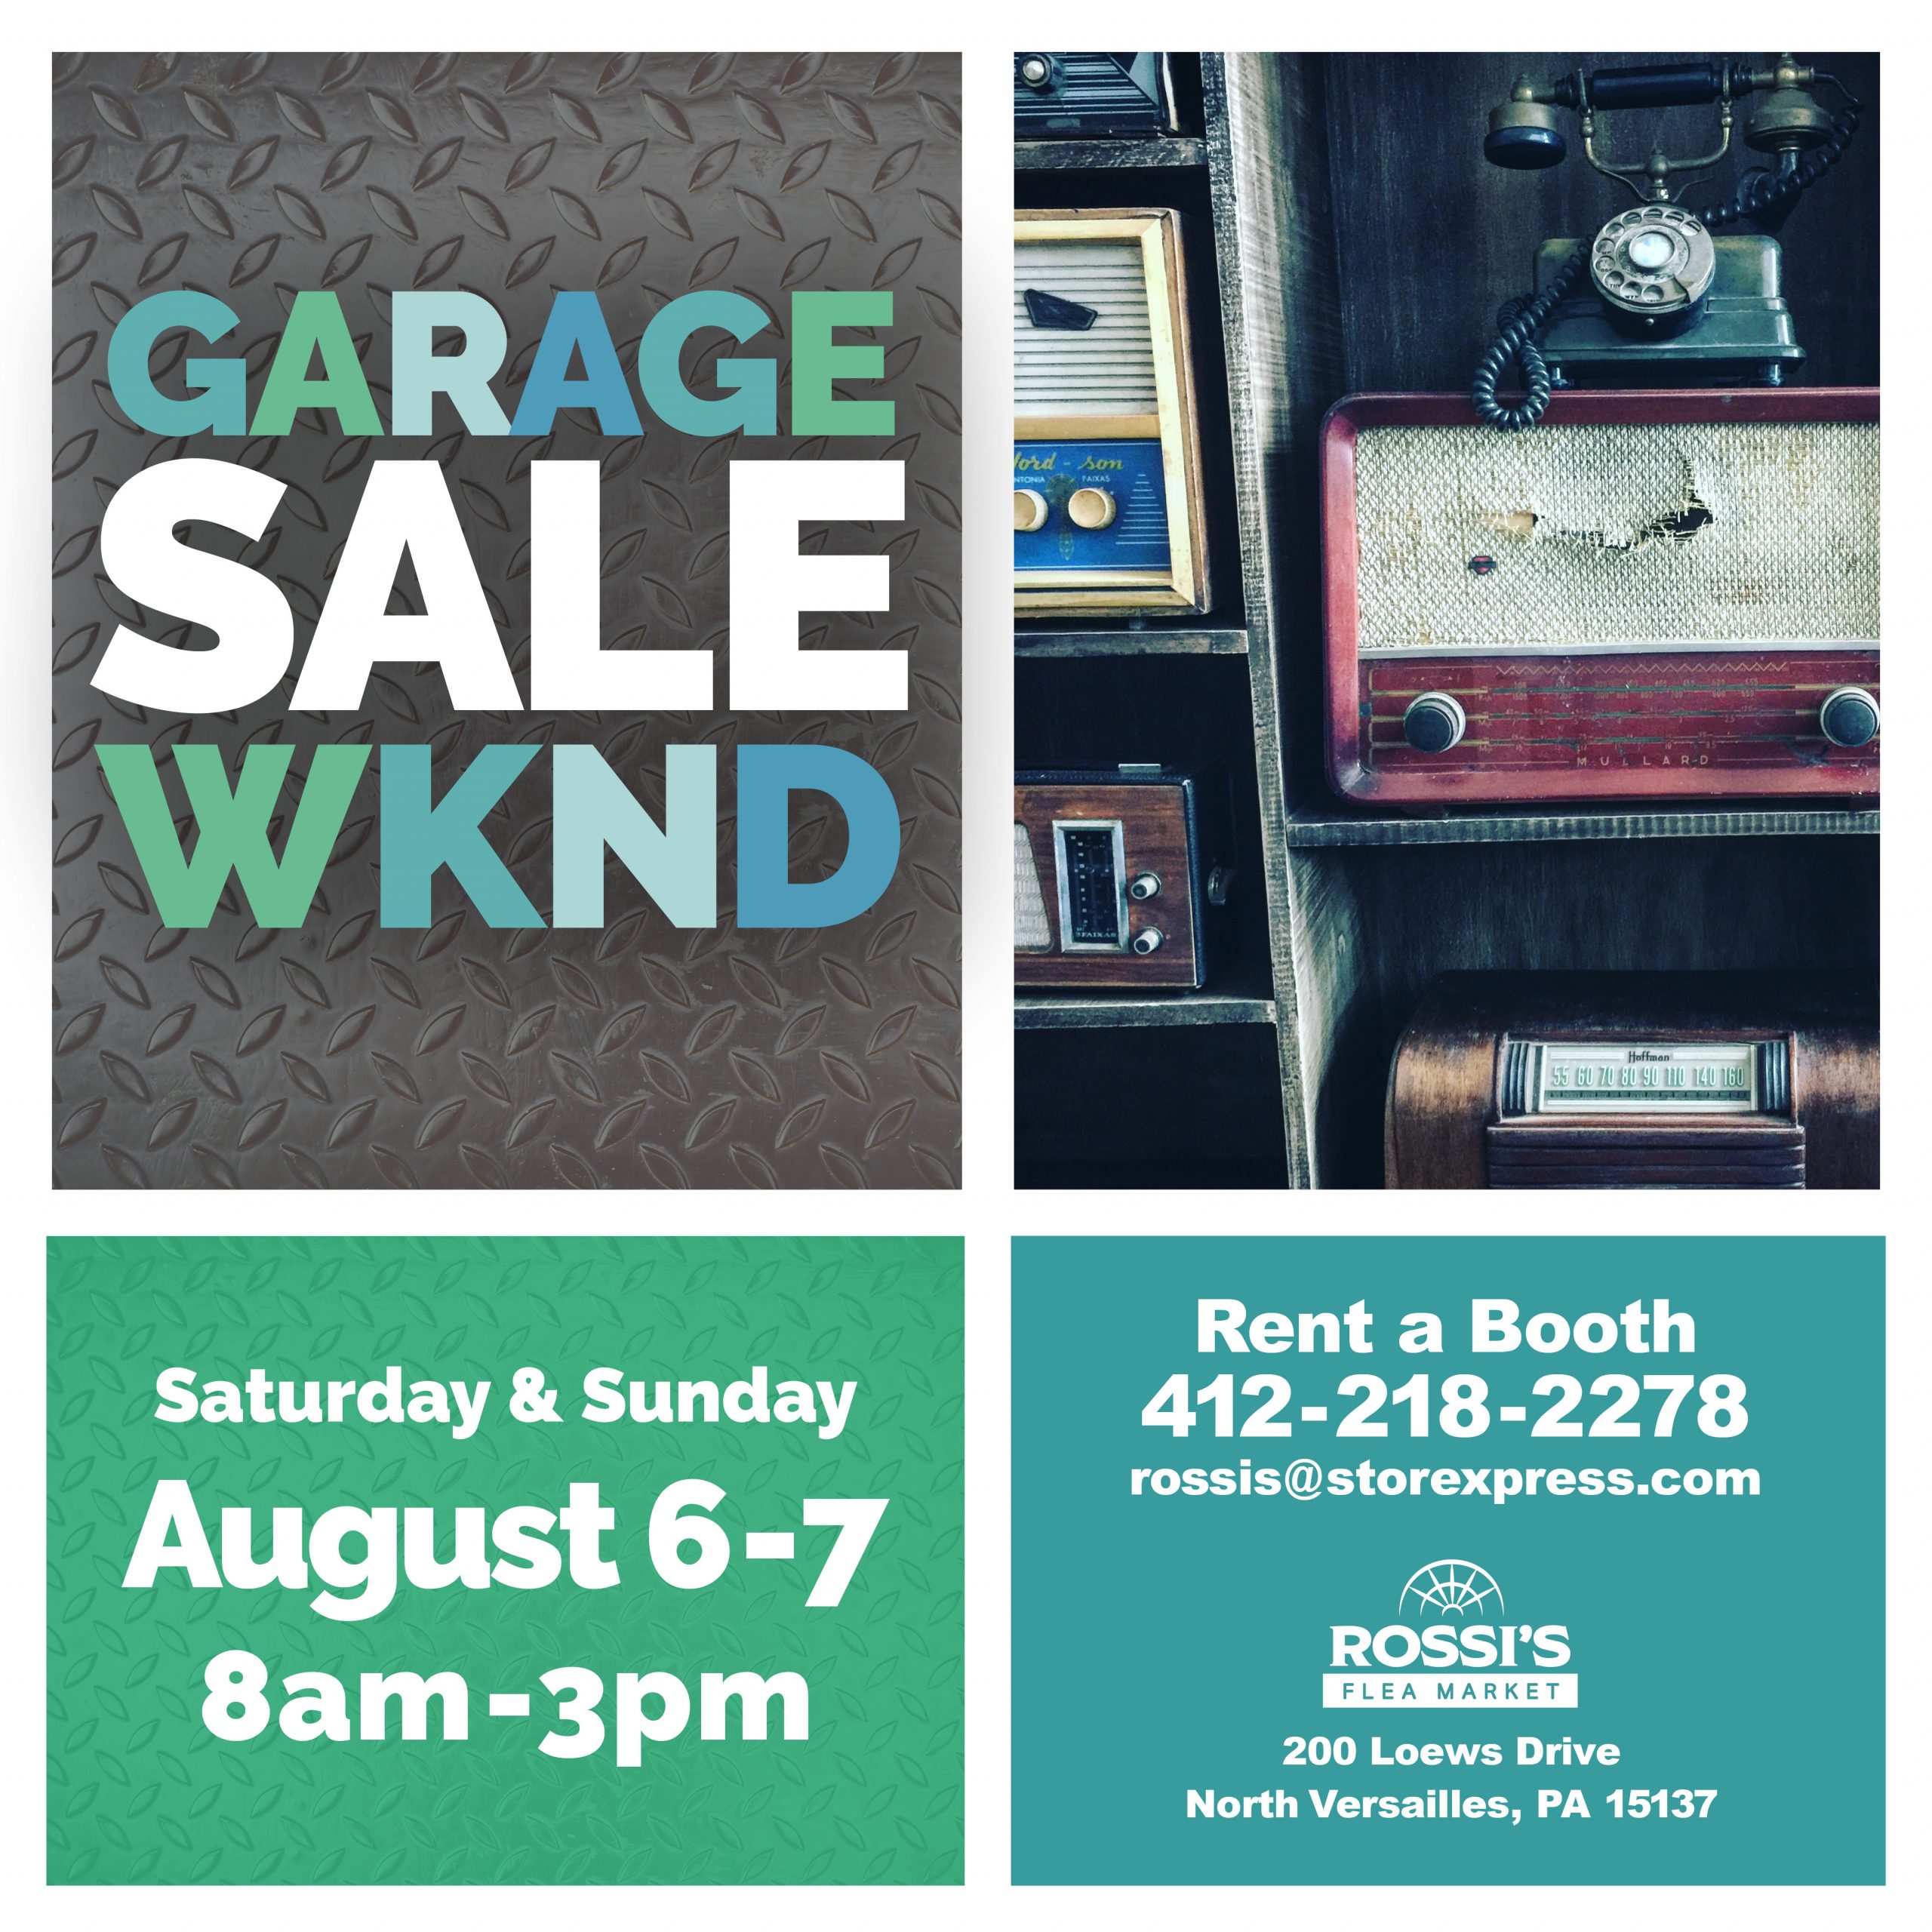 Garage Sale Weekend Information